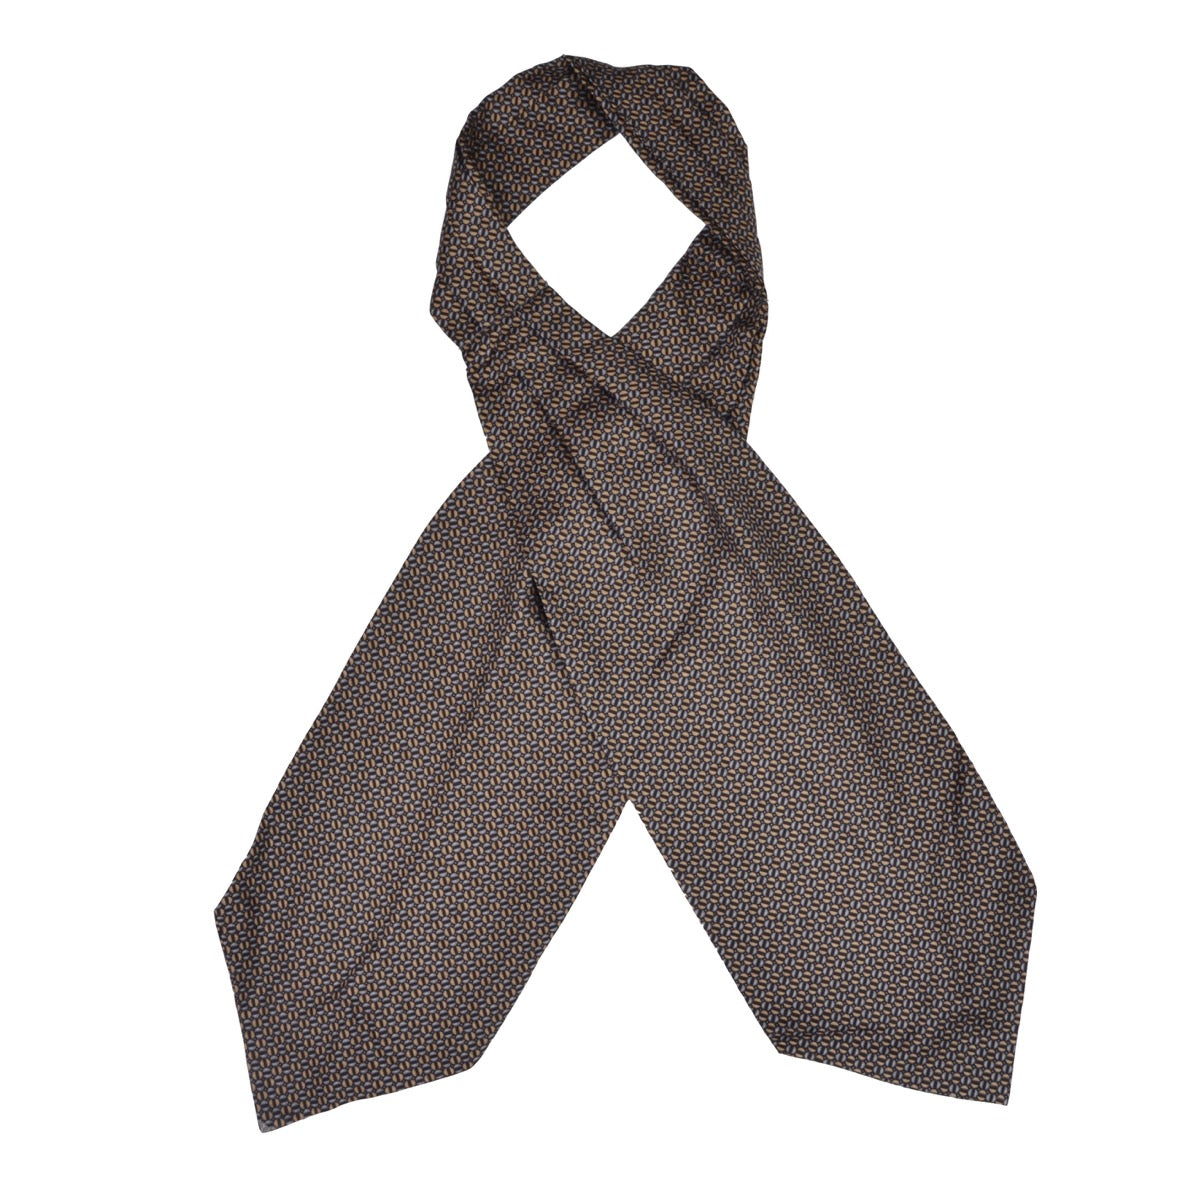 Canda Silk Ascot/Cravatte Tie - Blue, Black & Tan